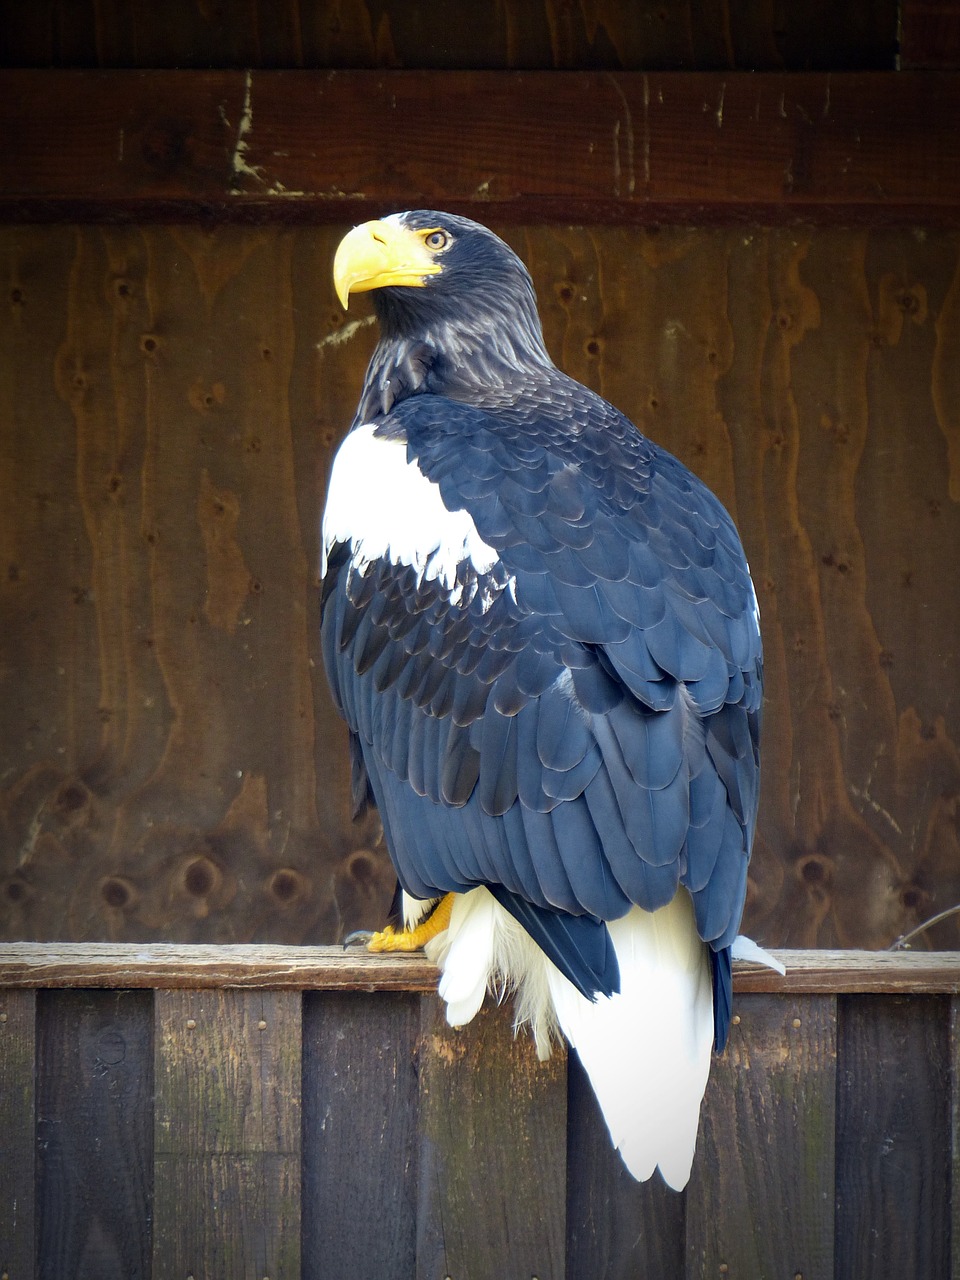 giant eagle adler bird free photo